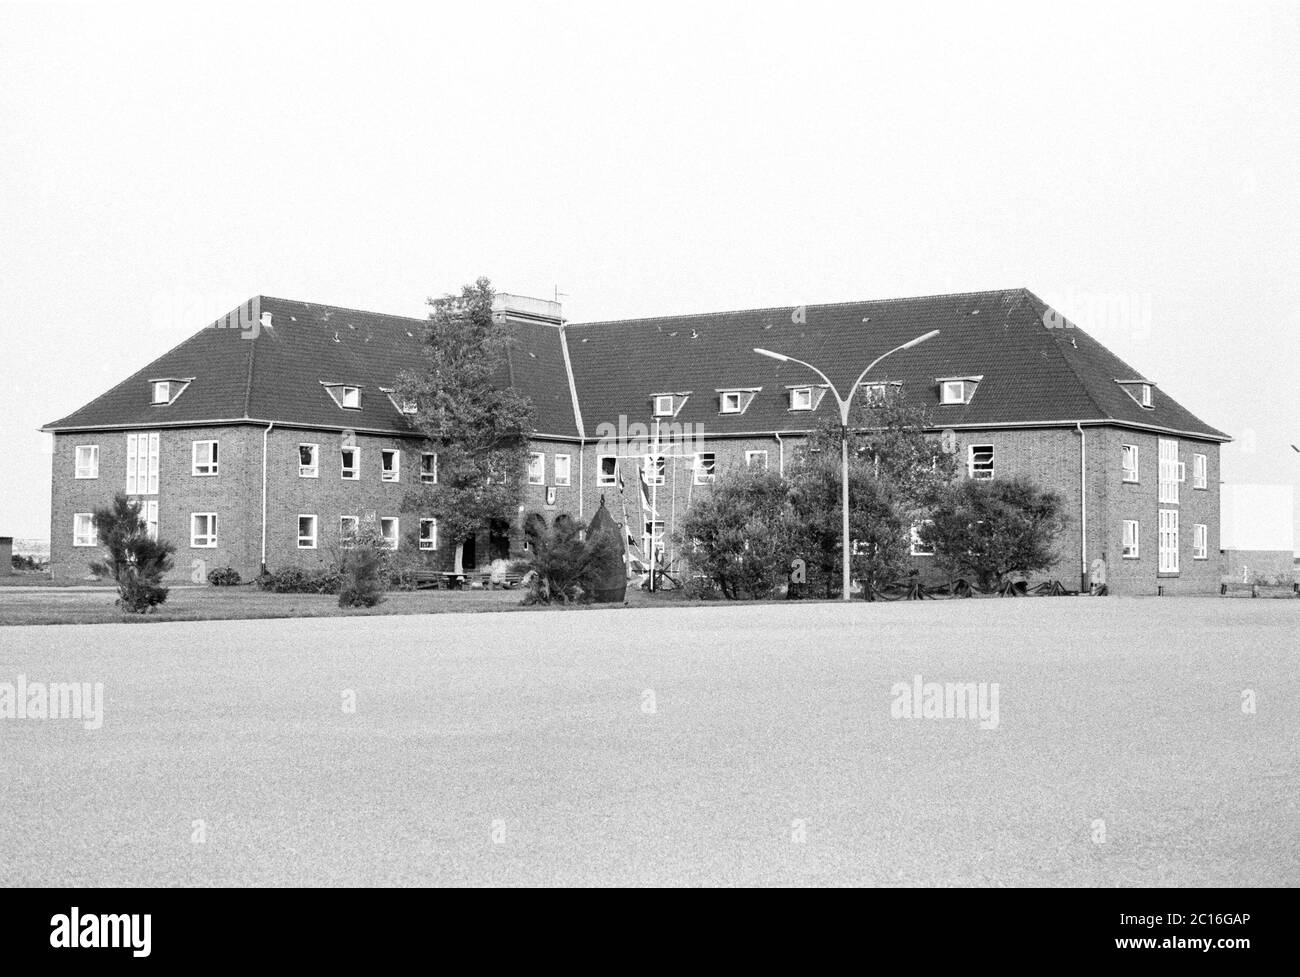 navy base, September 1981, Borkum Island, Lower Saxony, Germany Stock Photo